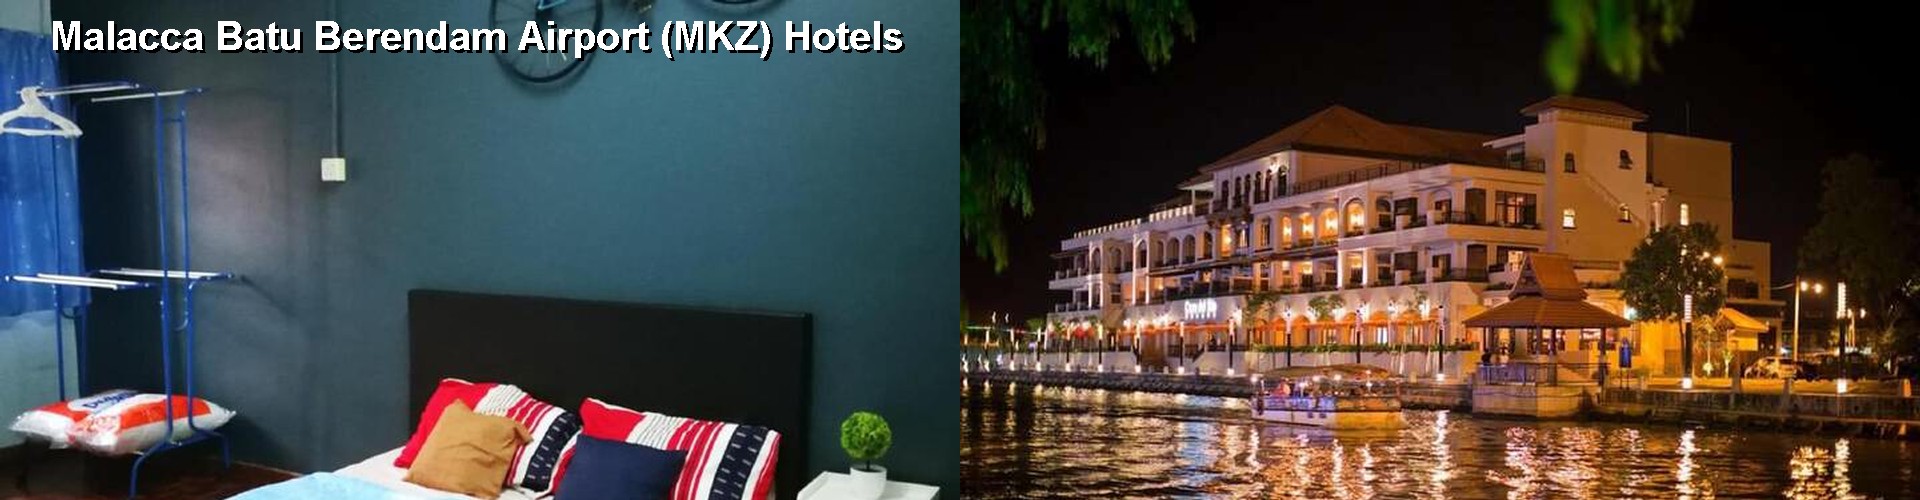 3 Best Hotels near Malacca Batu Berendam Airport (MKZ)